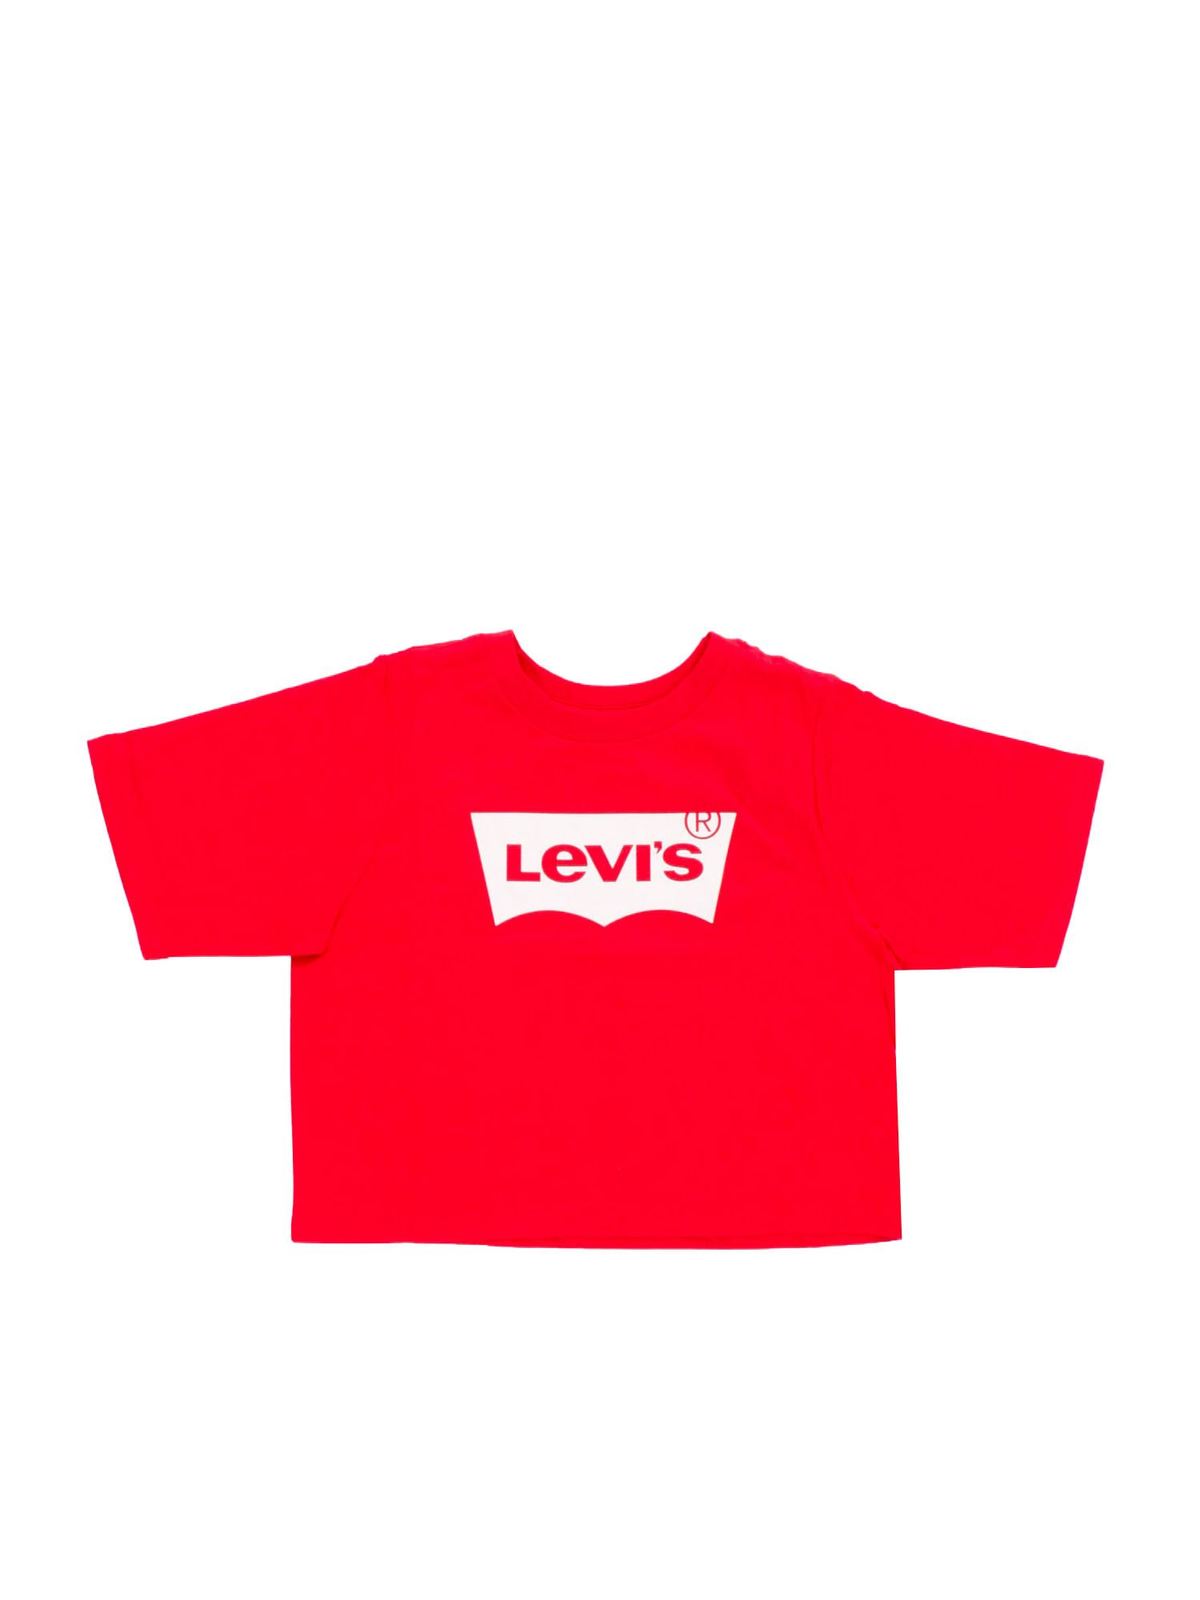 Tシャツ Levi'S Tシャツ 赤 4E0220R6W THEBS [iKRIX]